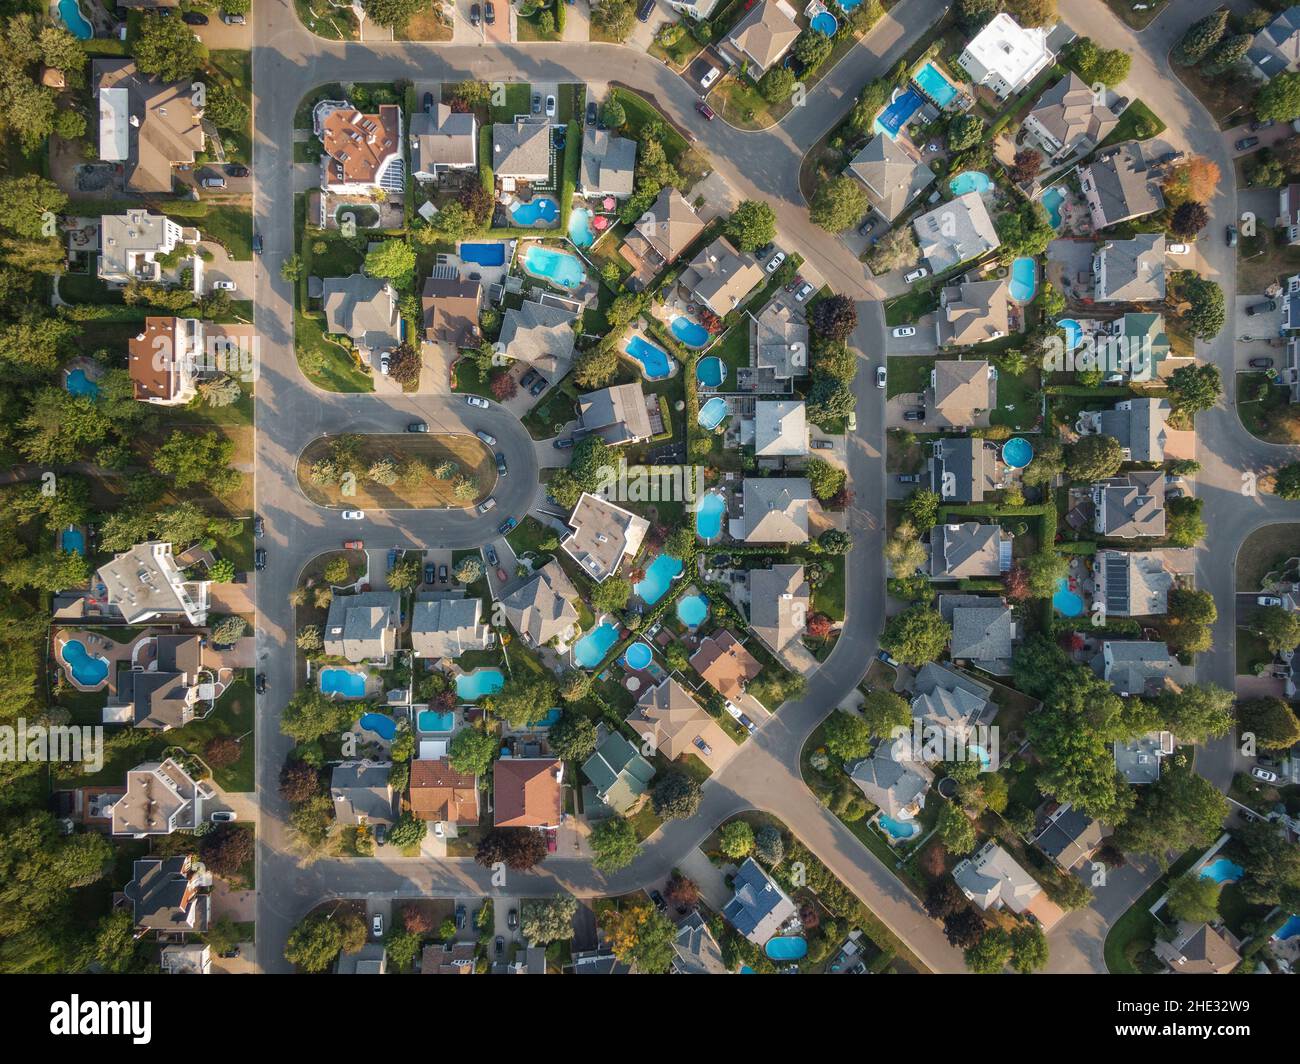 Vue aérienne de haut en bas des maisons et des rues du quartier résidentiel de Montréal, Québec, Canada.Concept immobilier, immobilier et immobilier. Banque D'Images